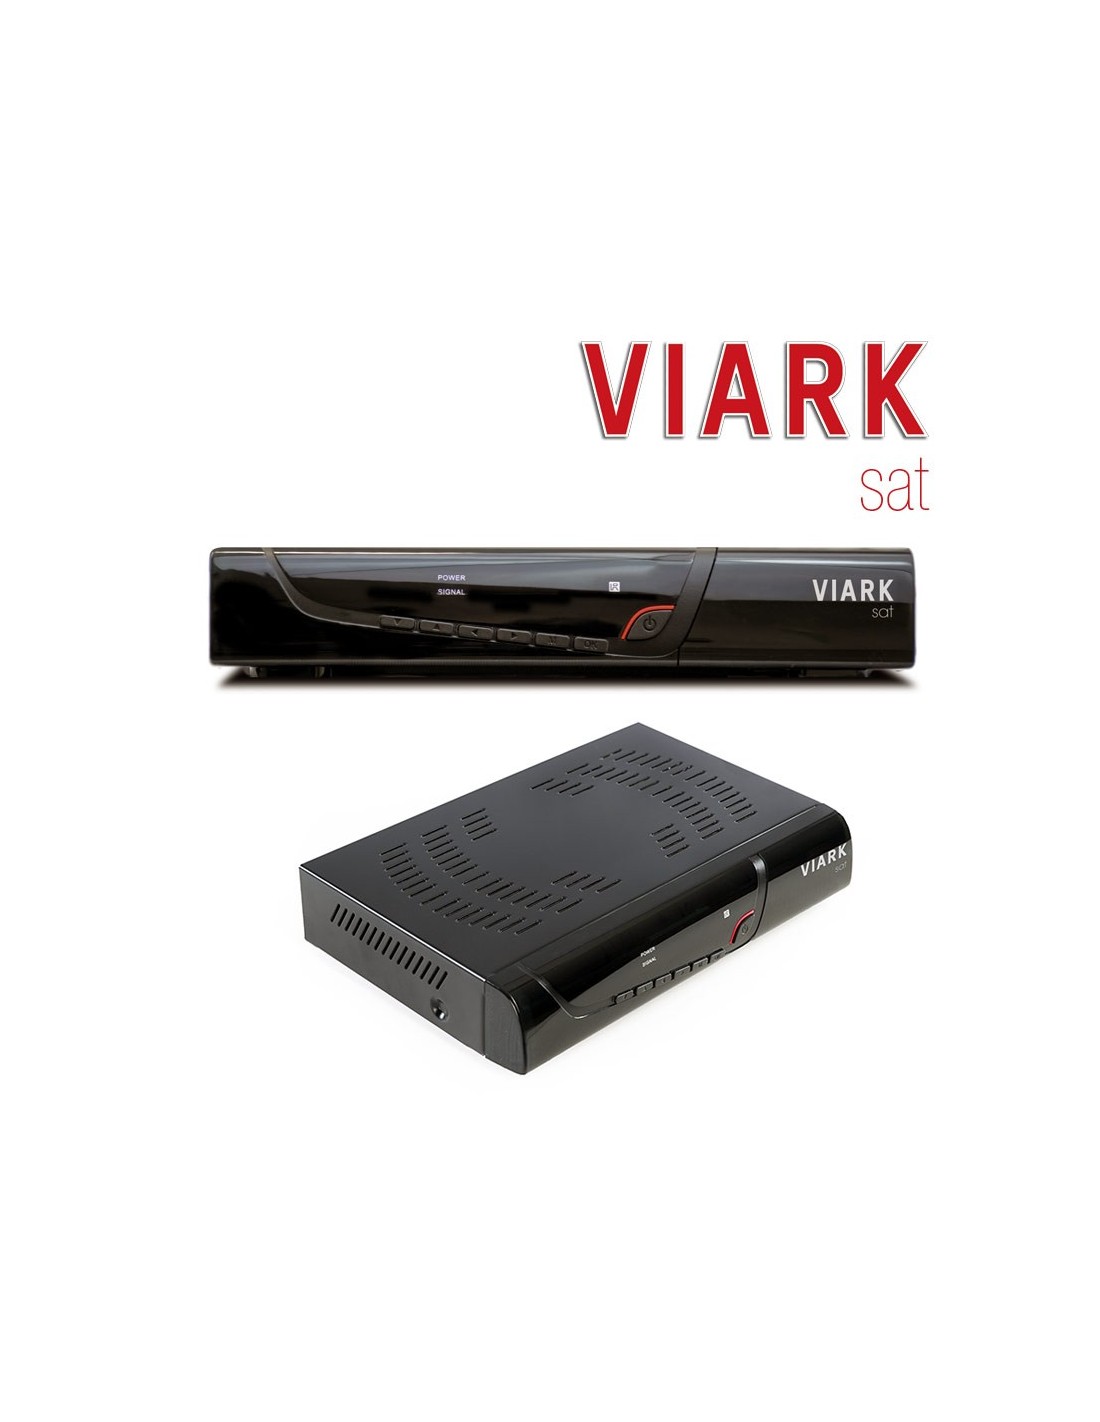 ▷ Viark SAT 4K 【Envío Gratis 24H】✔️ Mejor Precio